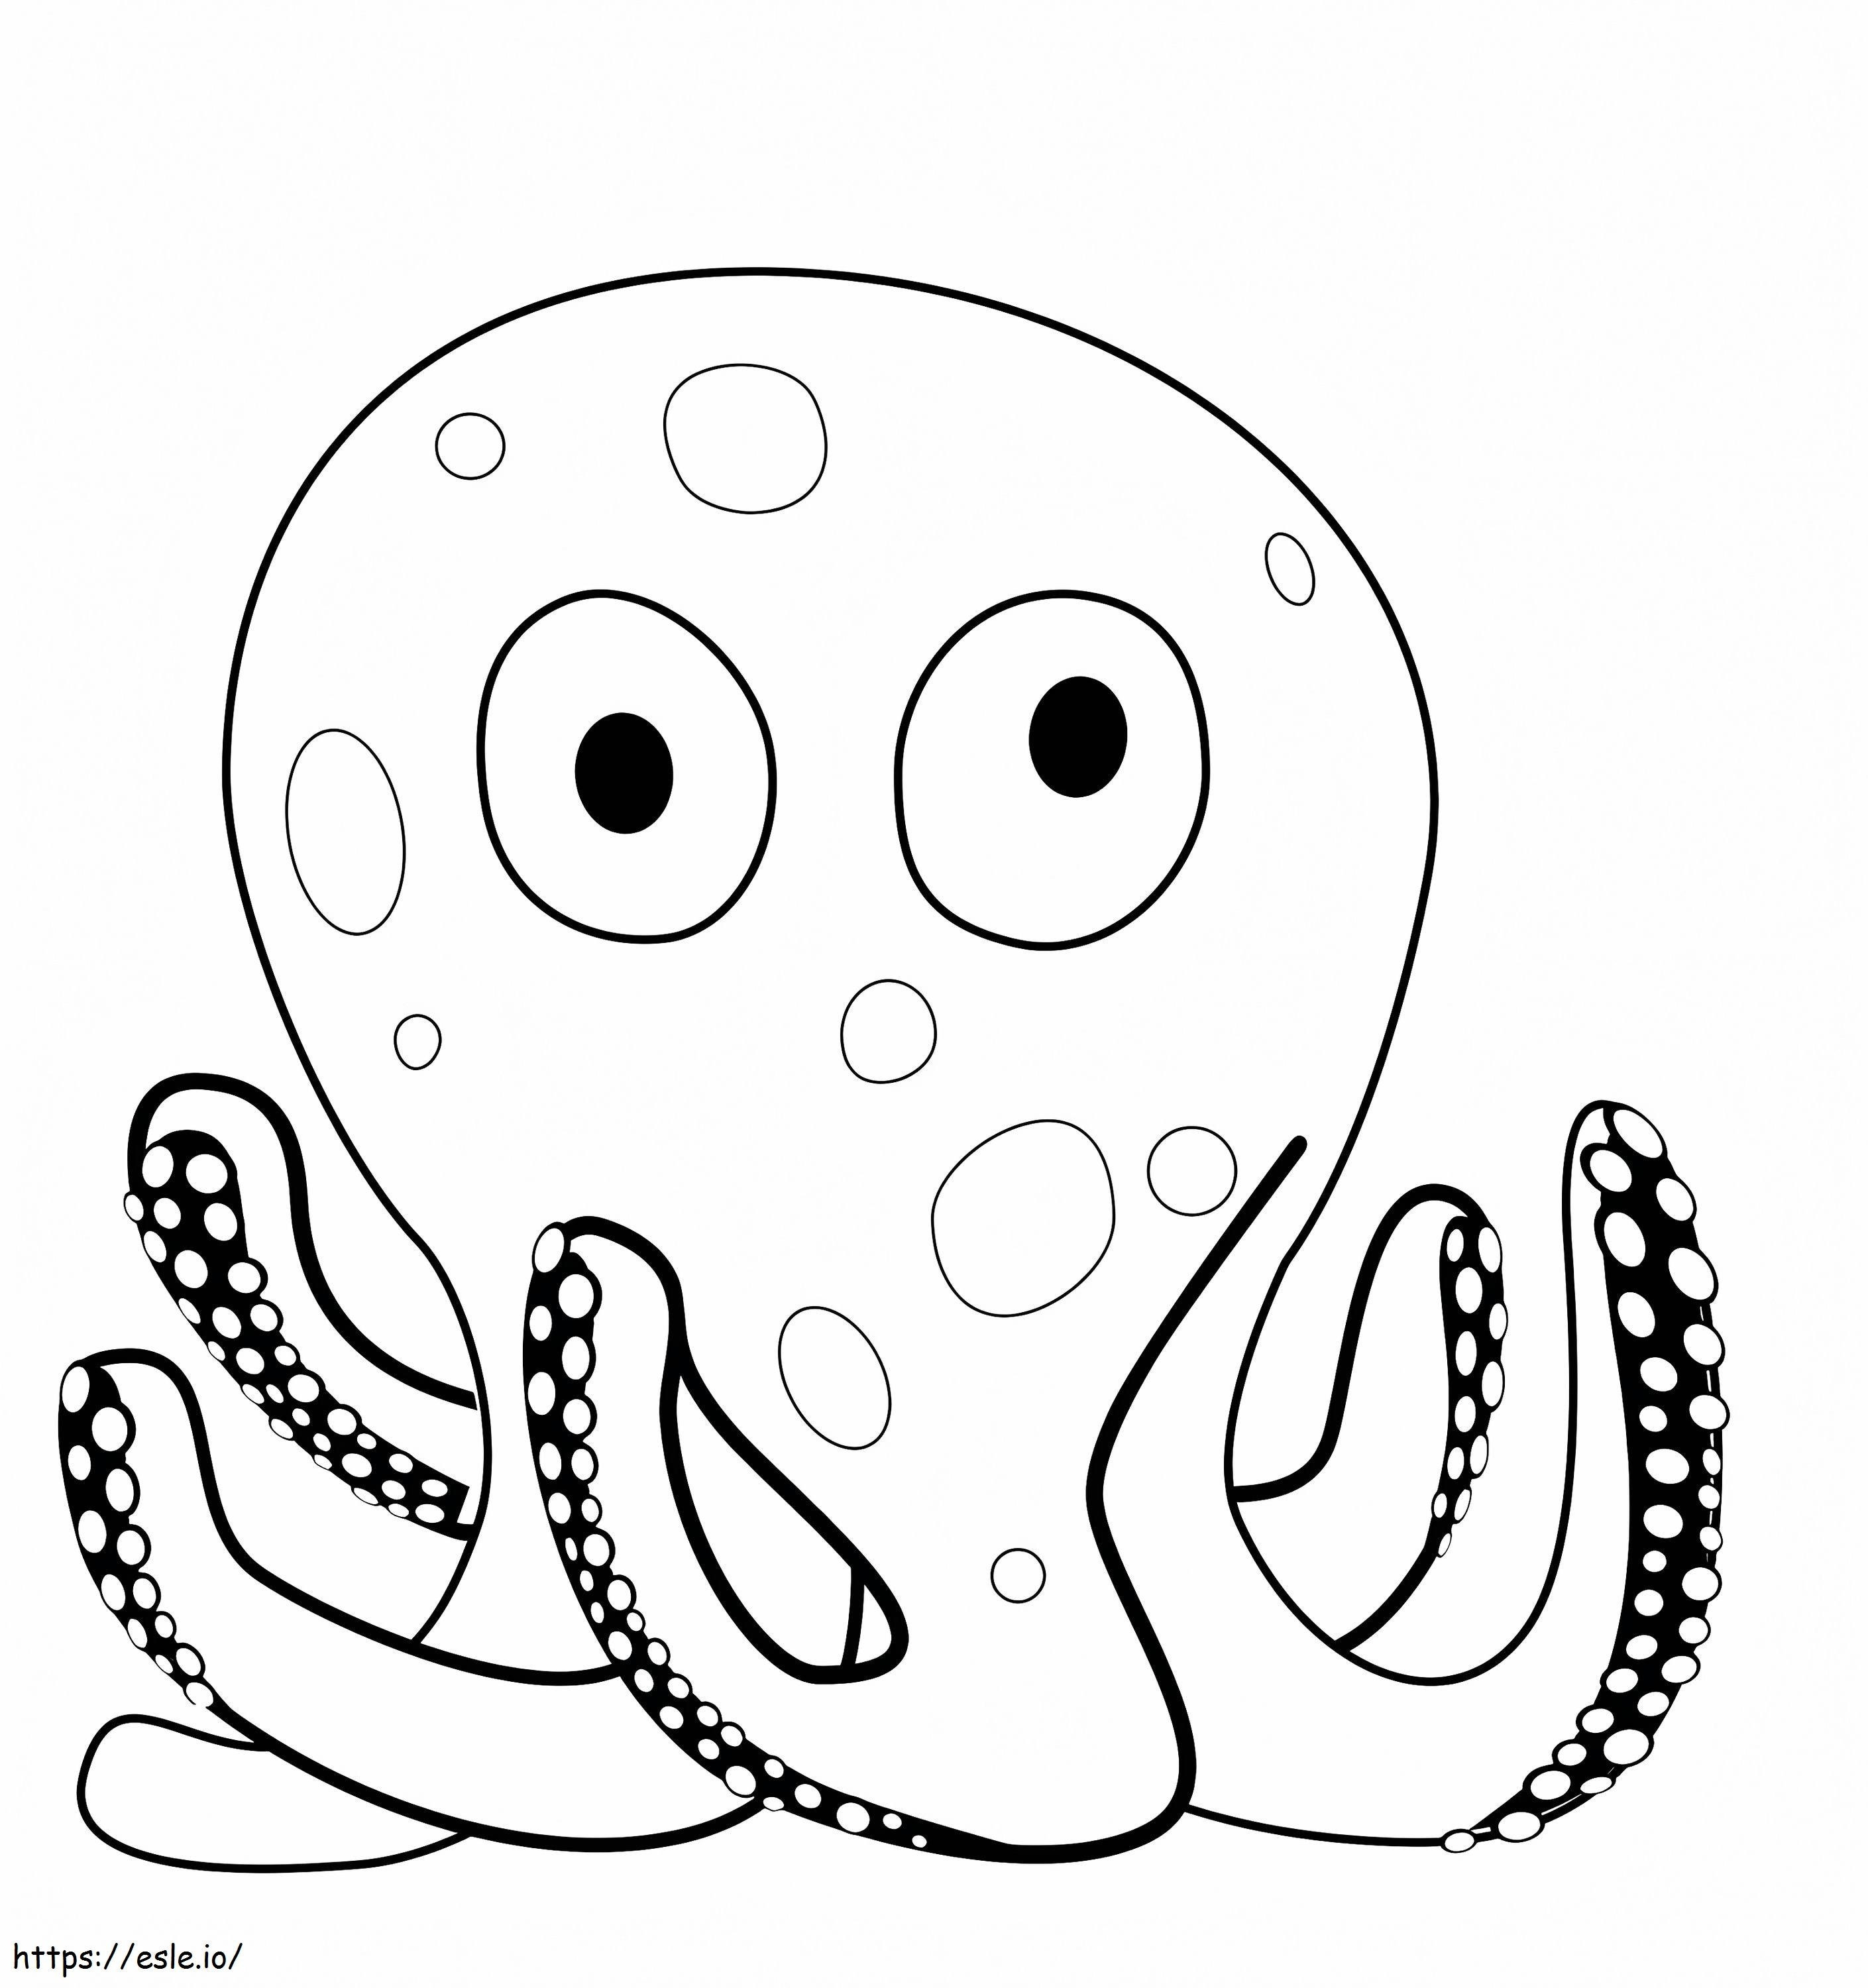  Leuke Octopus A4 kleurplaat kleurplaat